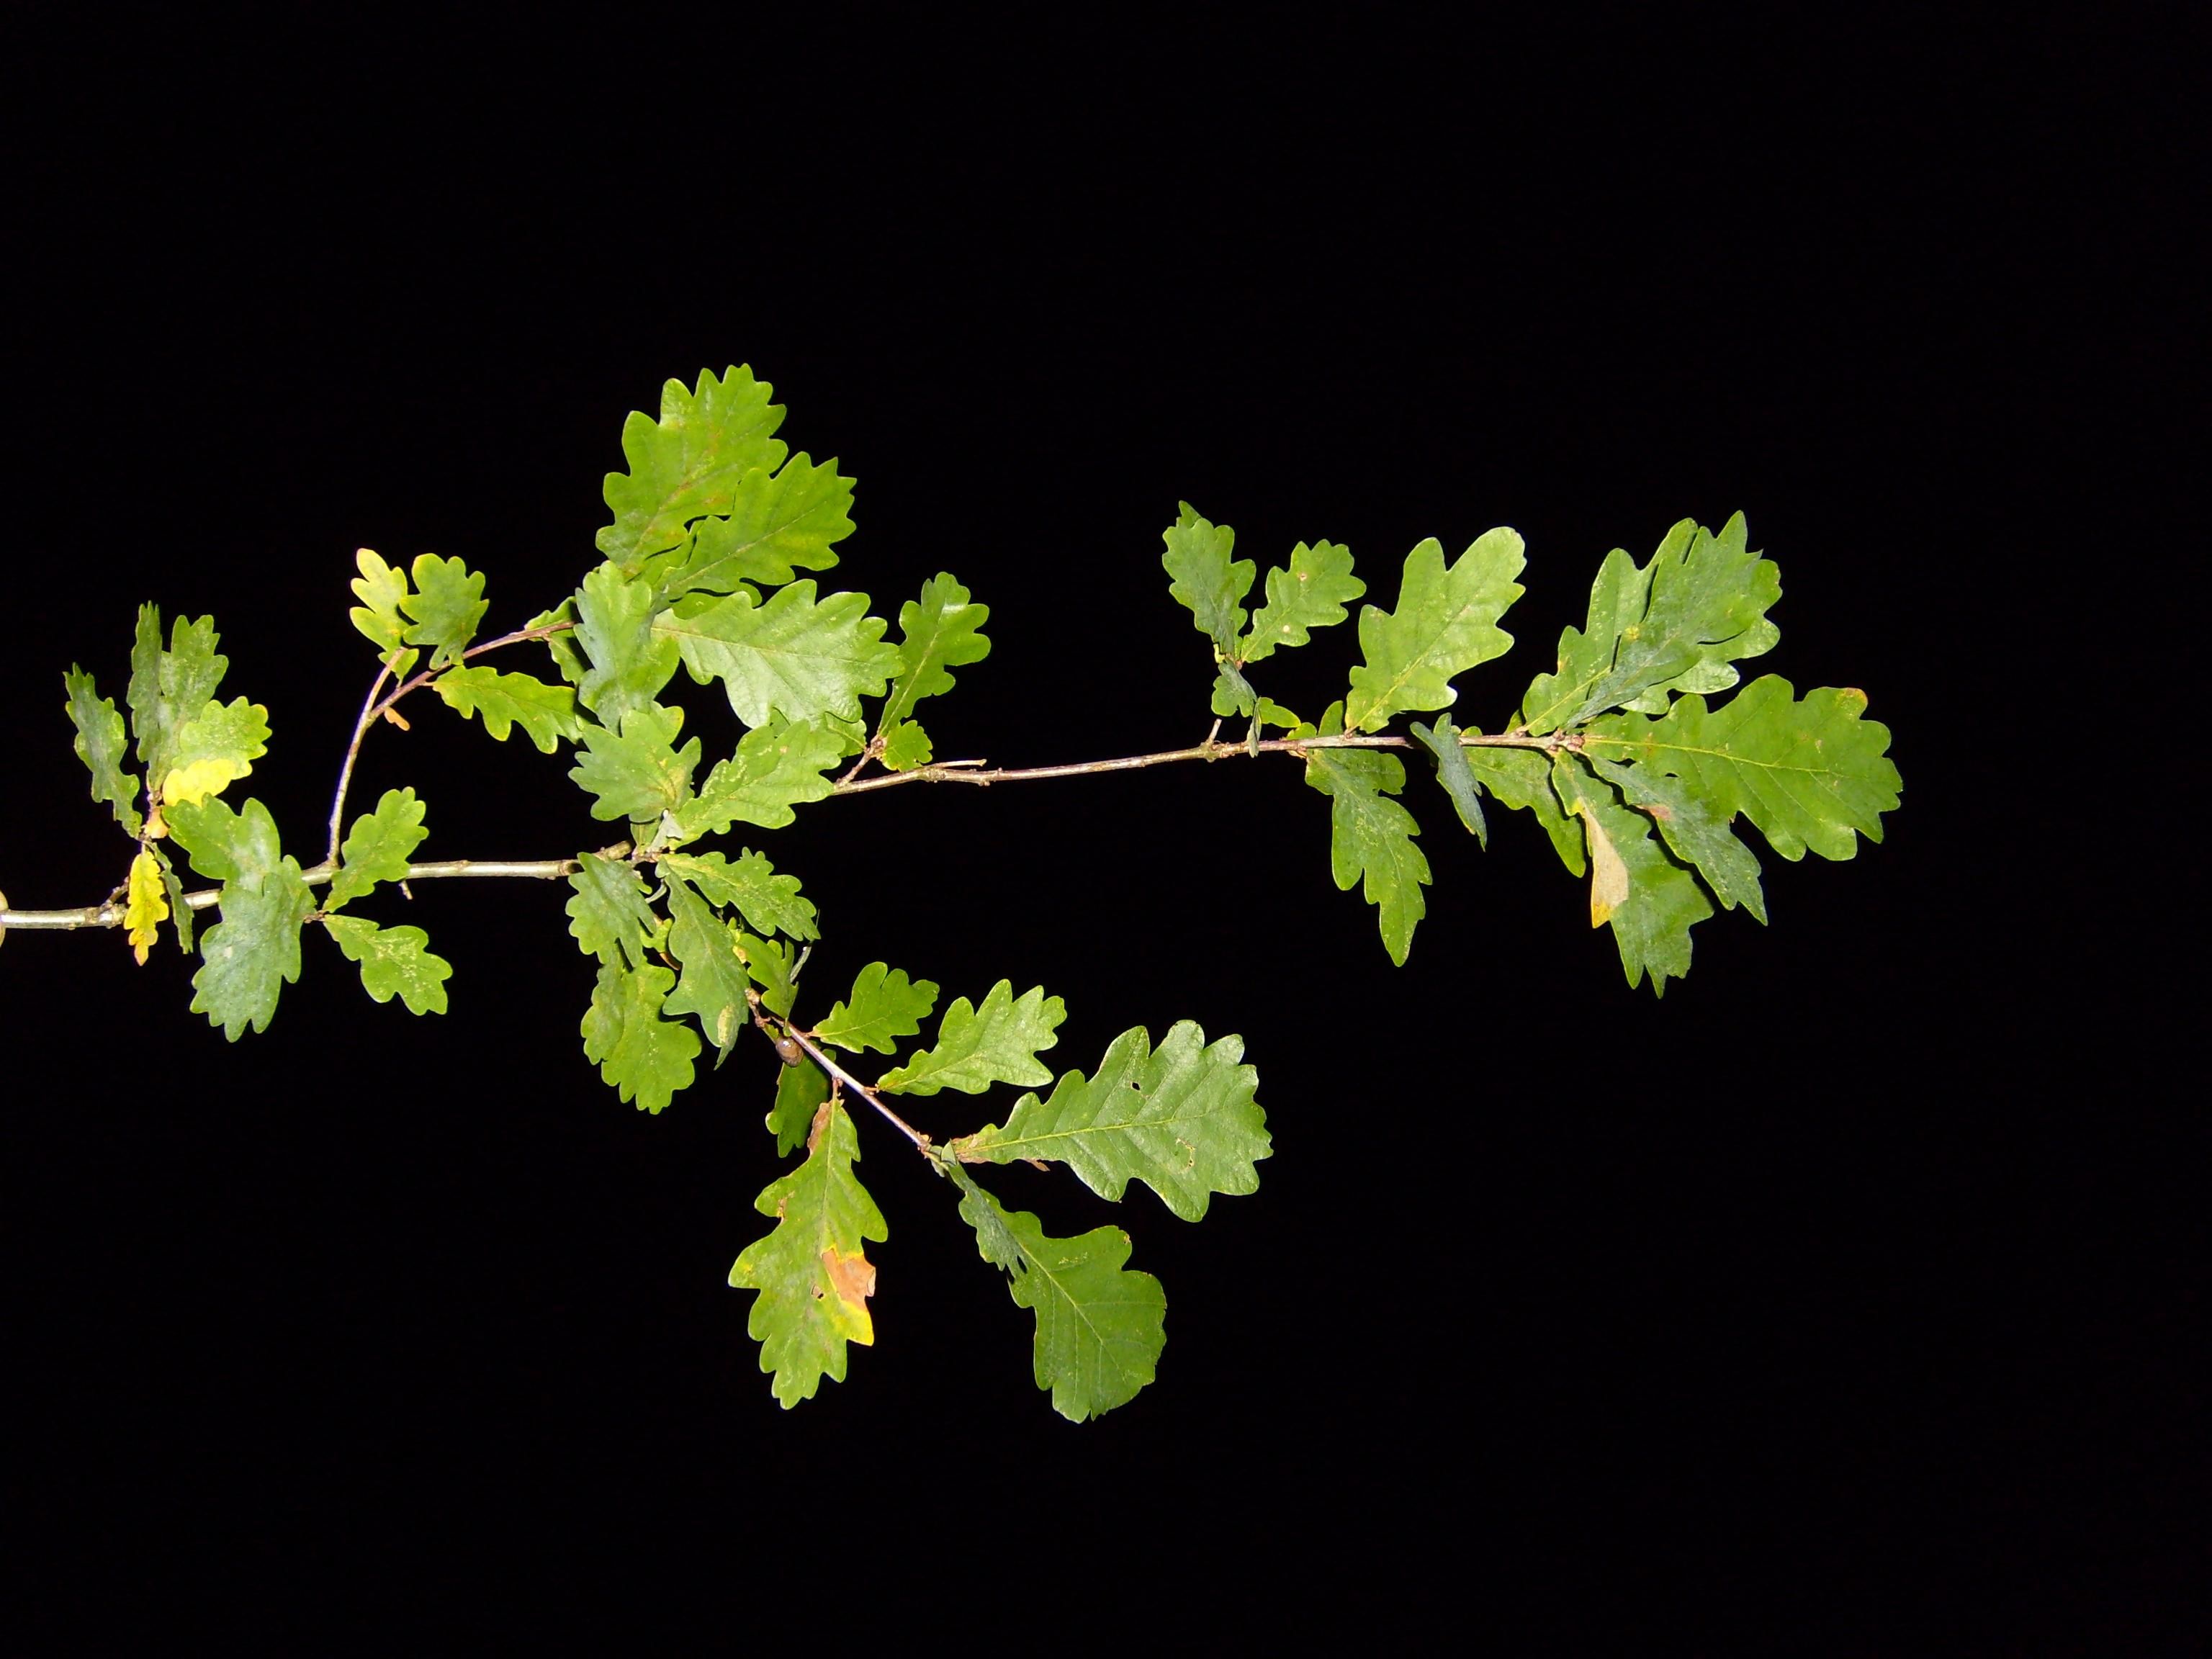 File:Leaf leaves branch pak nightshot.jpg - Wikimedia Commons